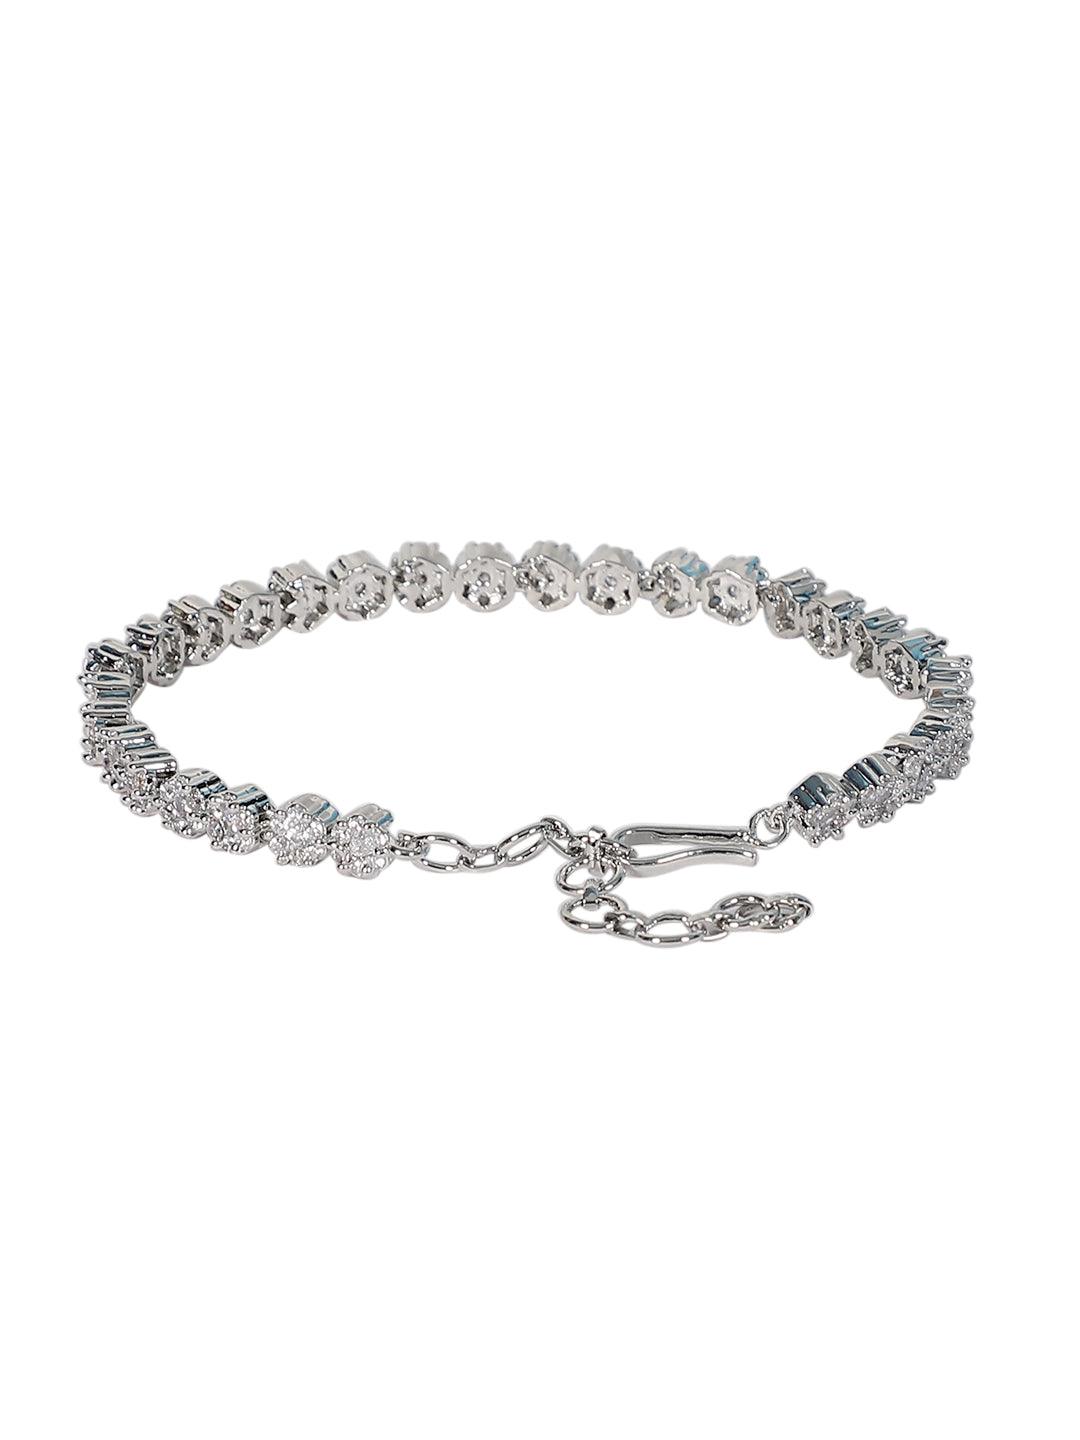 White American Diamond Adjustable Bracelet - Steorra Jewels